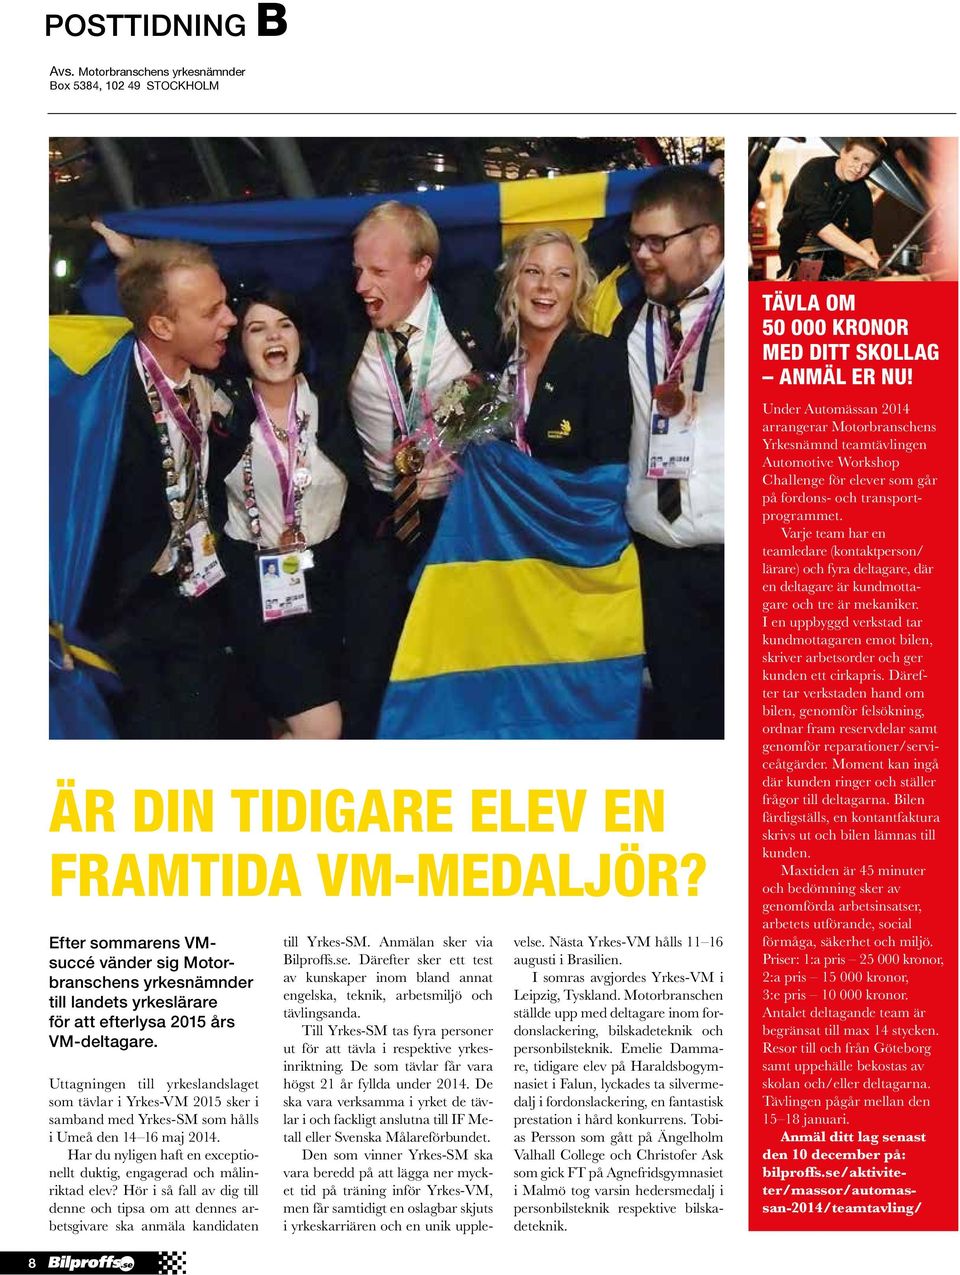 Uttagningen till yrkeslandslaget som tävlar i Yrkes-VM 2015 sker i samband med Yrkes-SM som hålls i Umeå den 14 16 maj 2014.